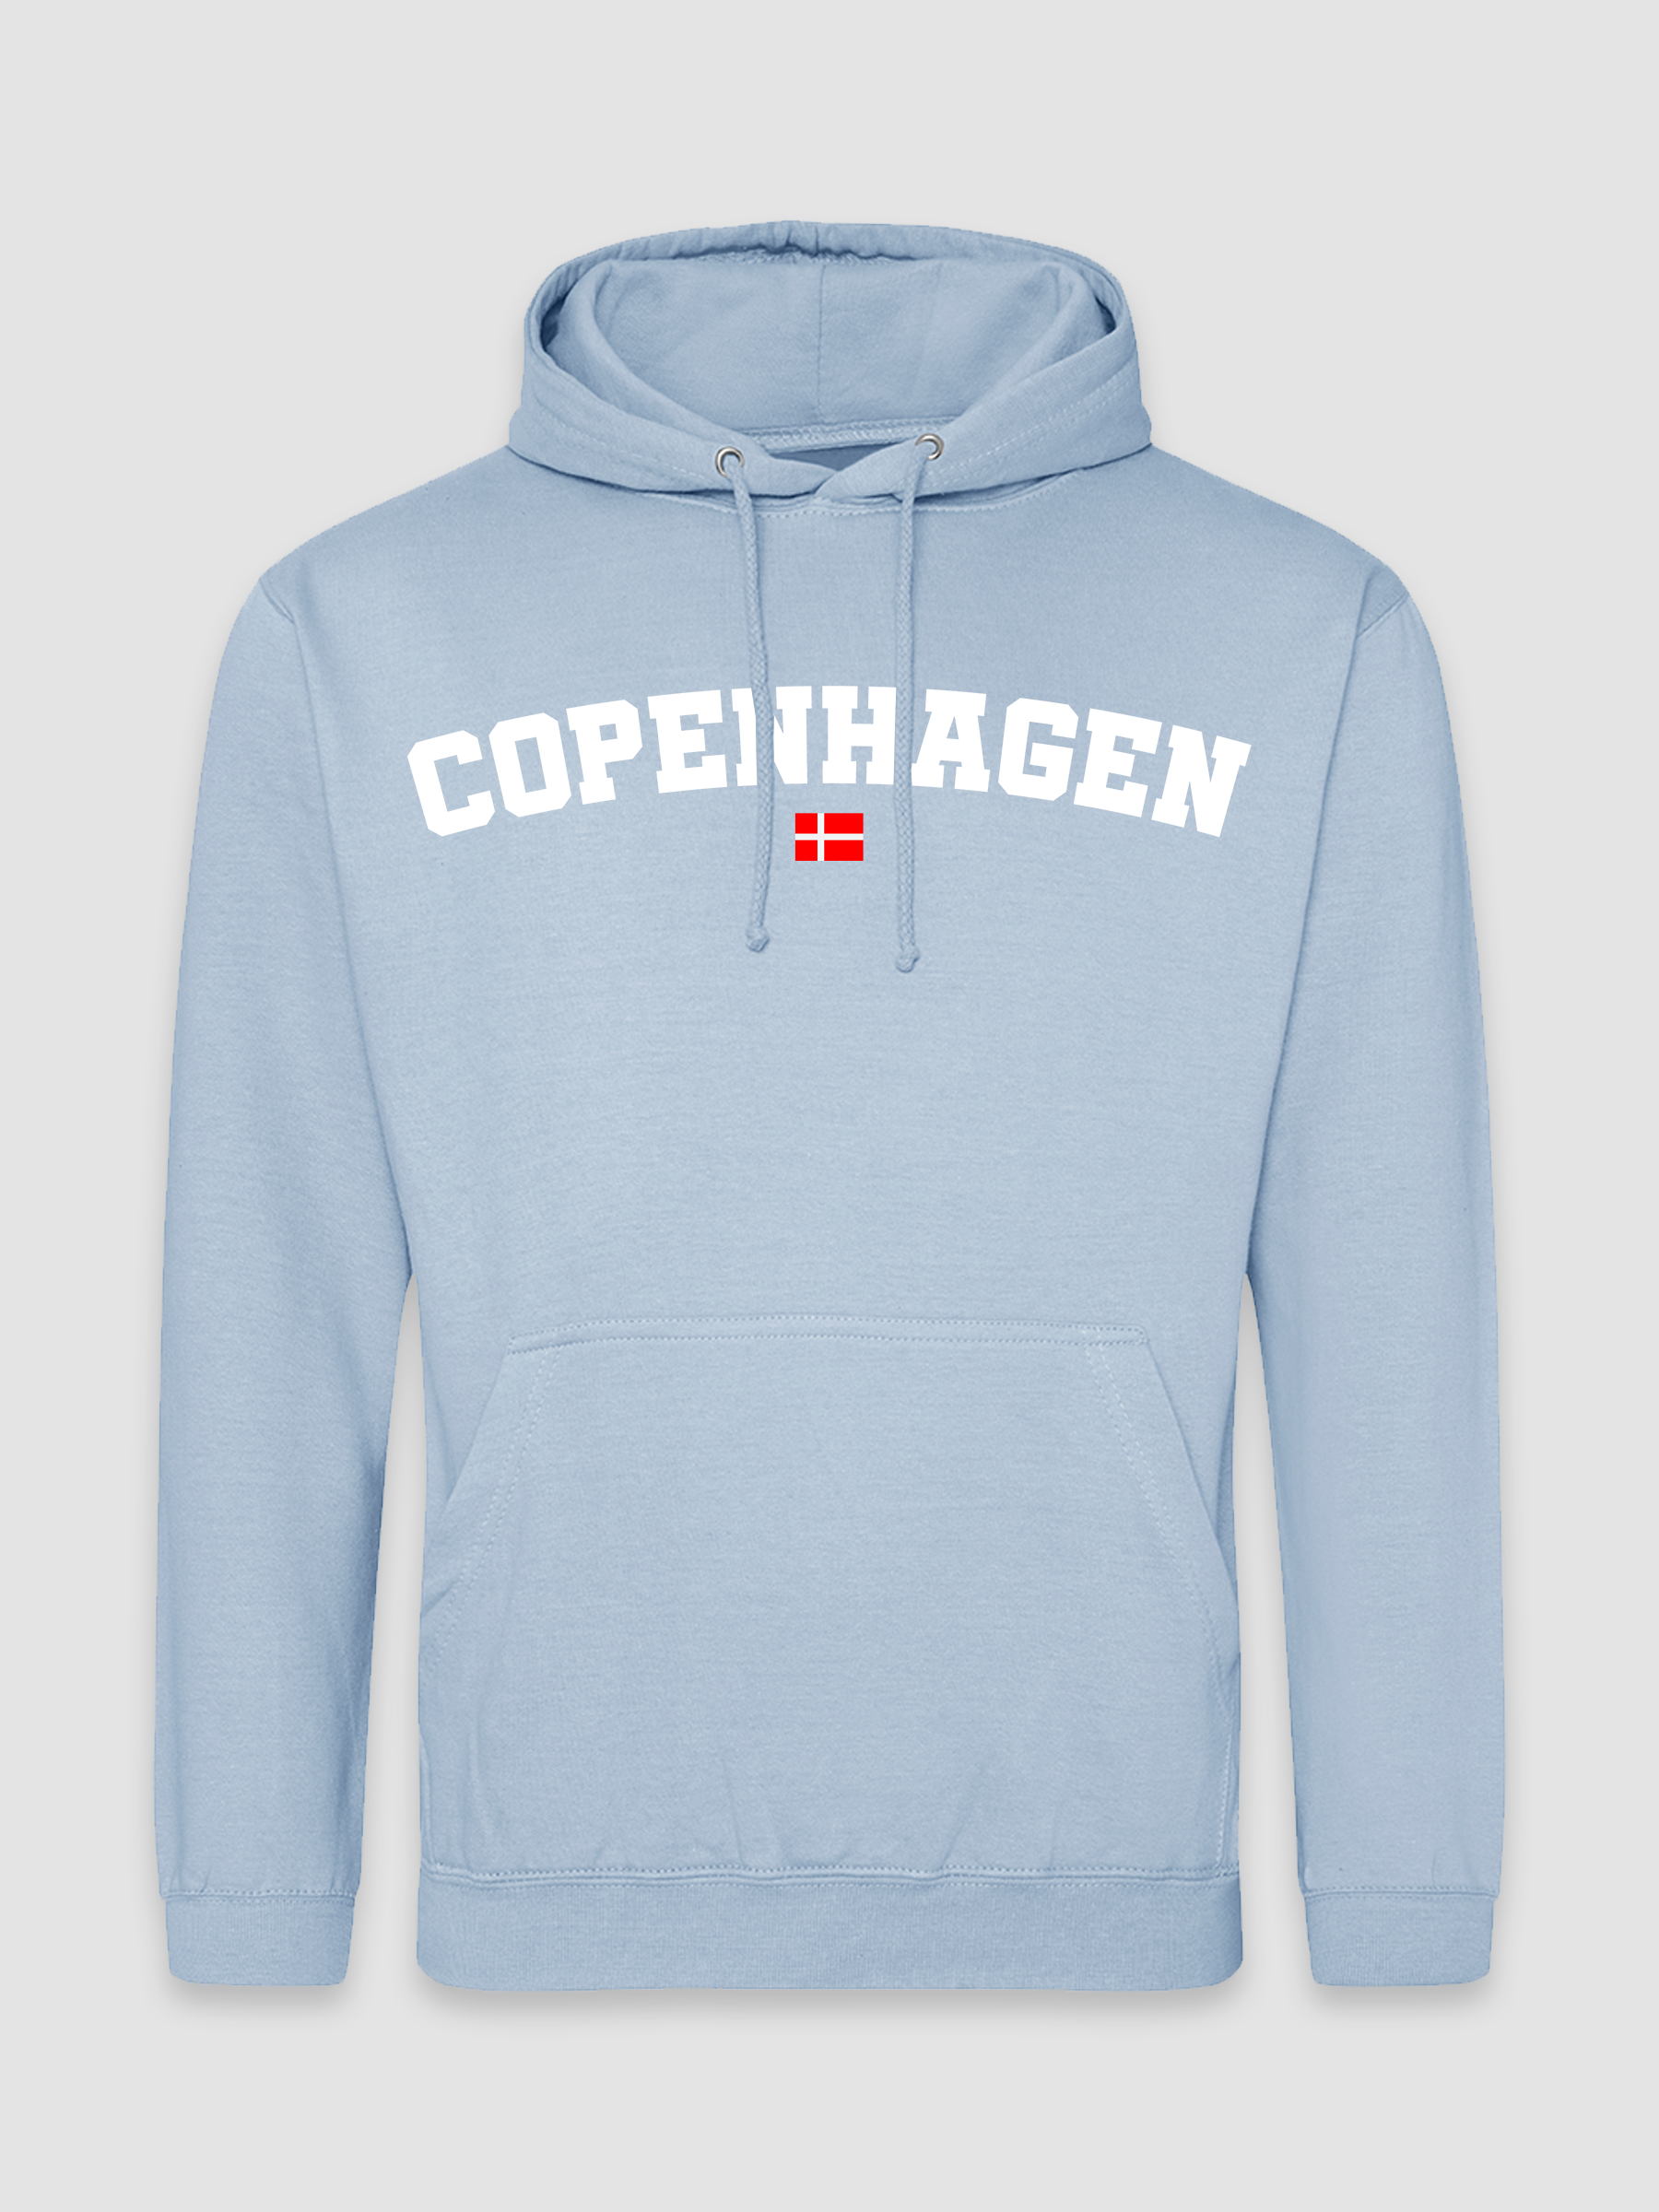 Copenhagen - Navy Hoodie